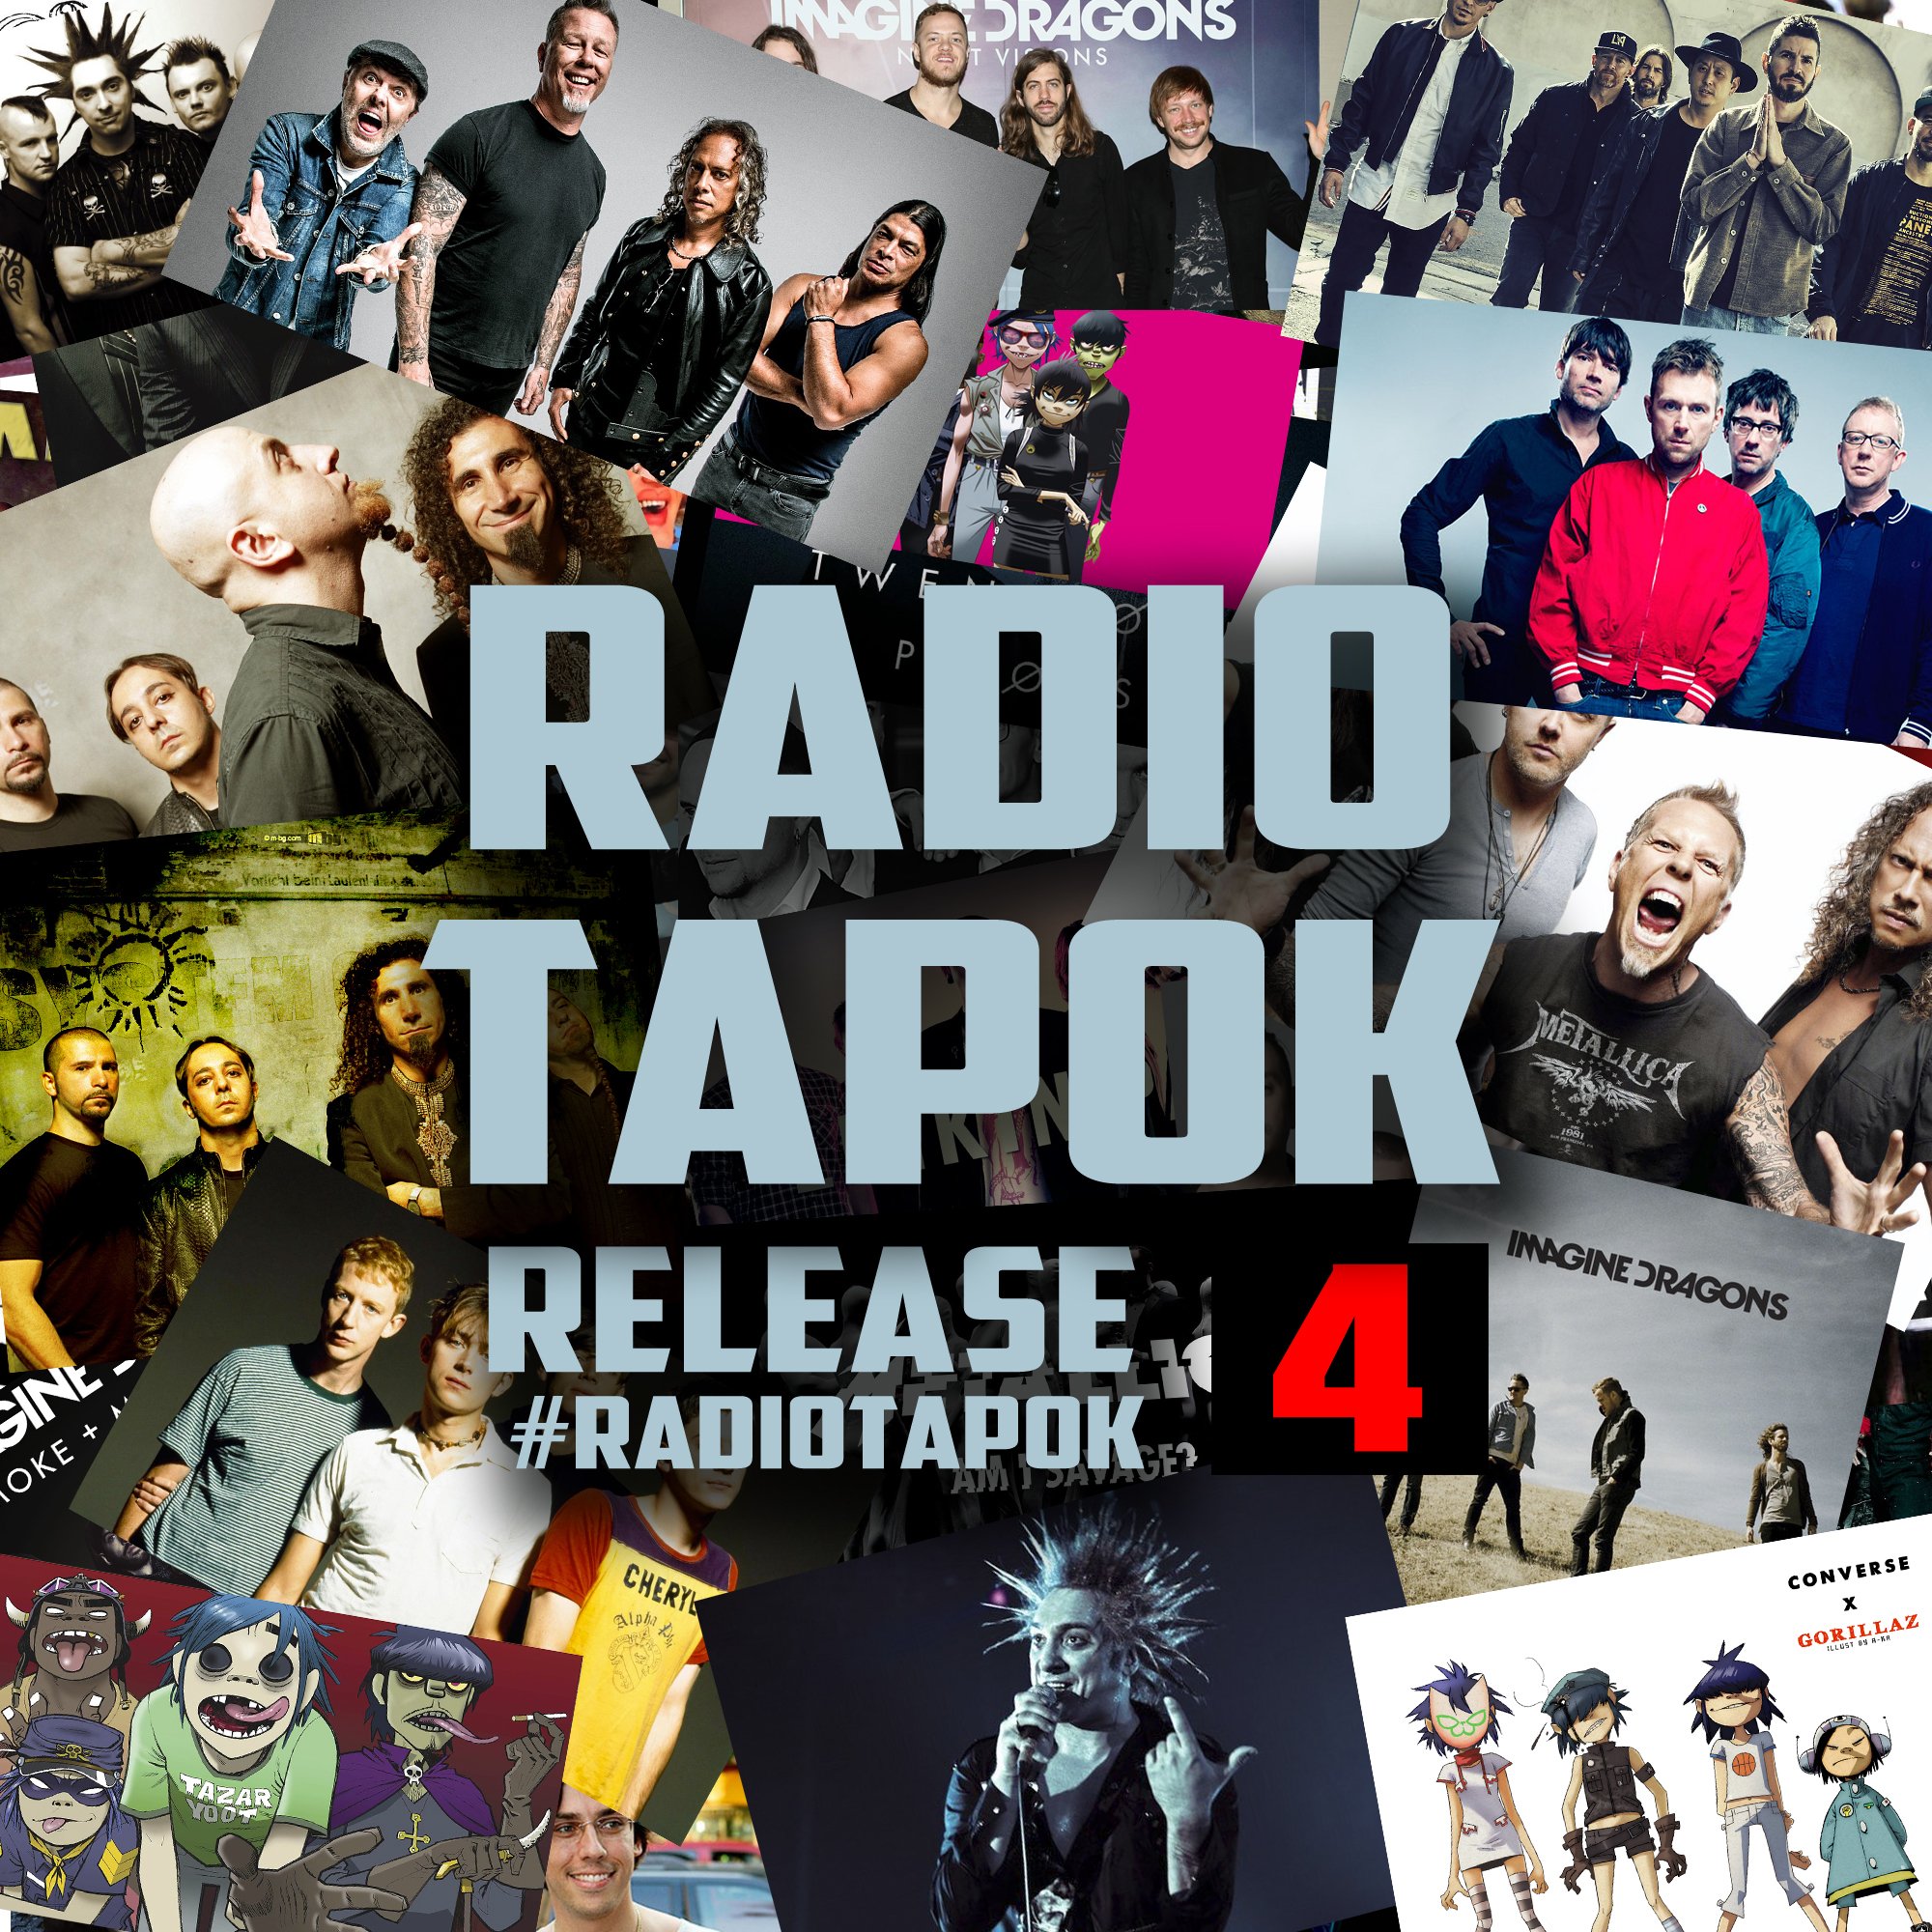 Слушать песни радио тарок. Радио тапок альбом. Radio Tapok release 4. Radio Tapok обложка.